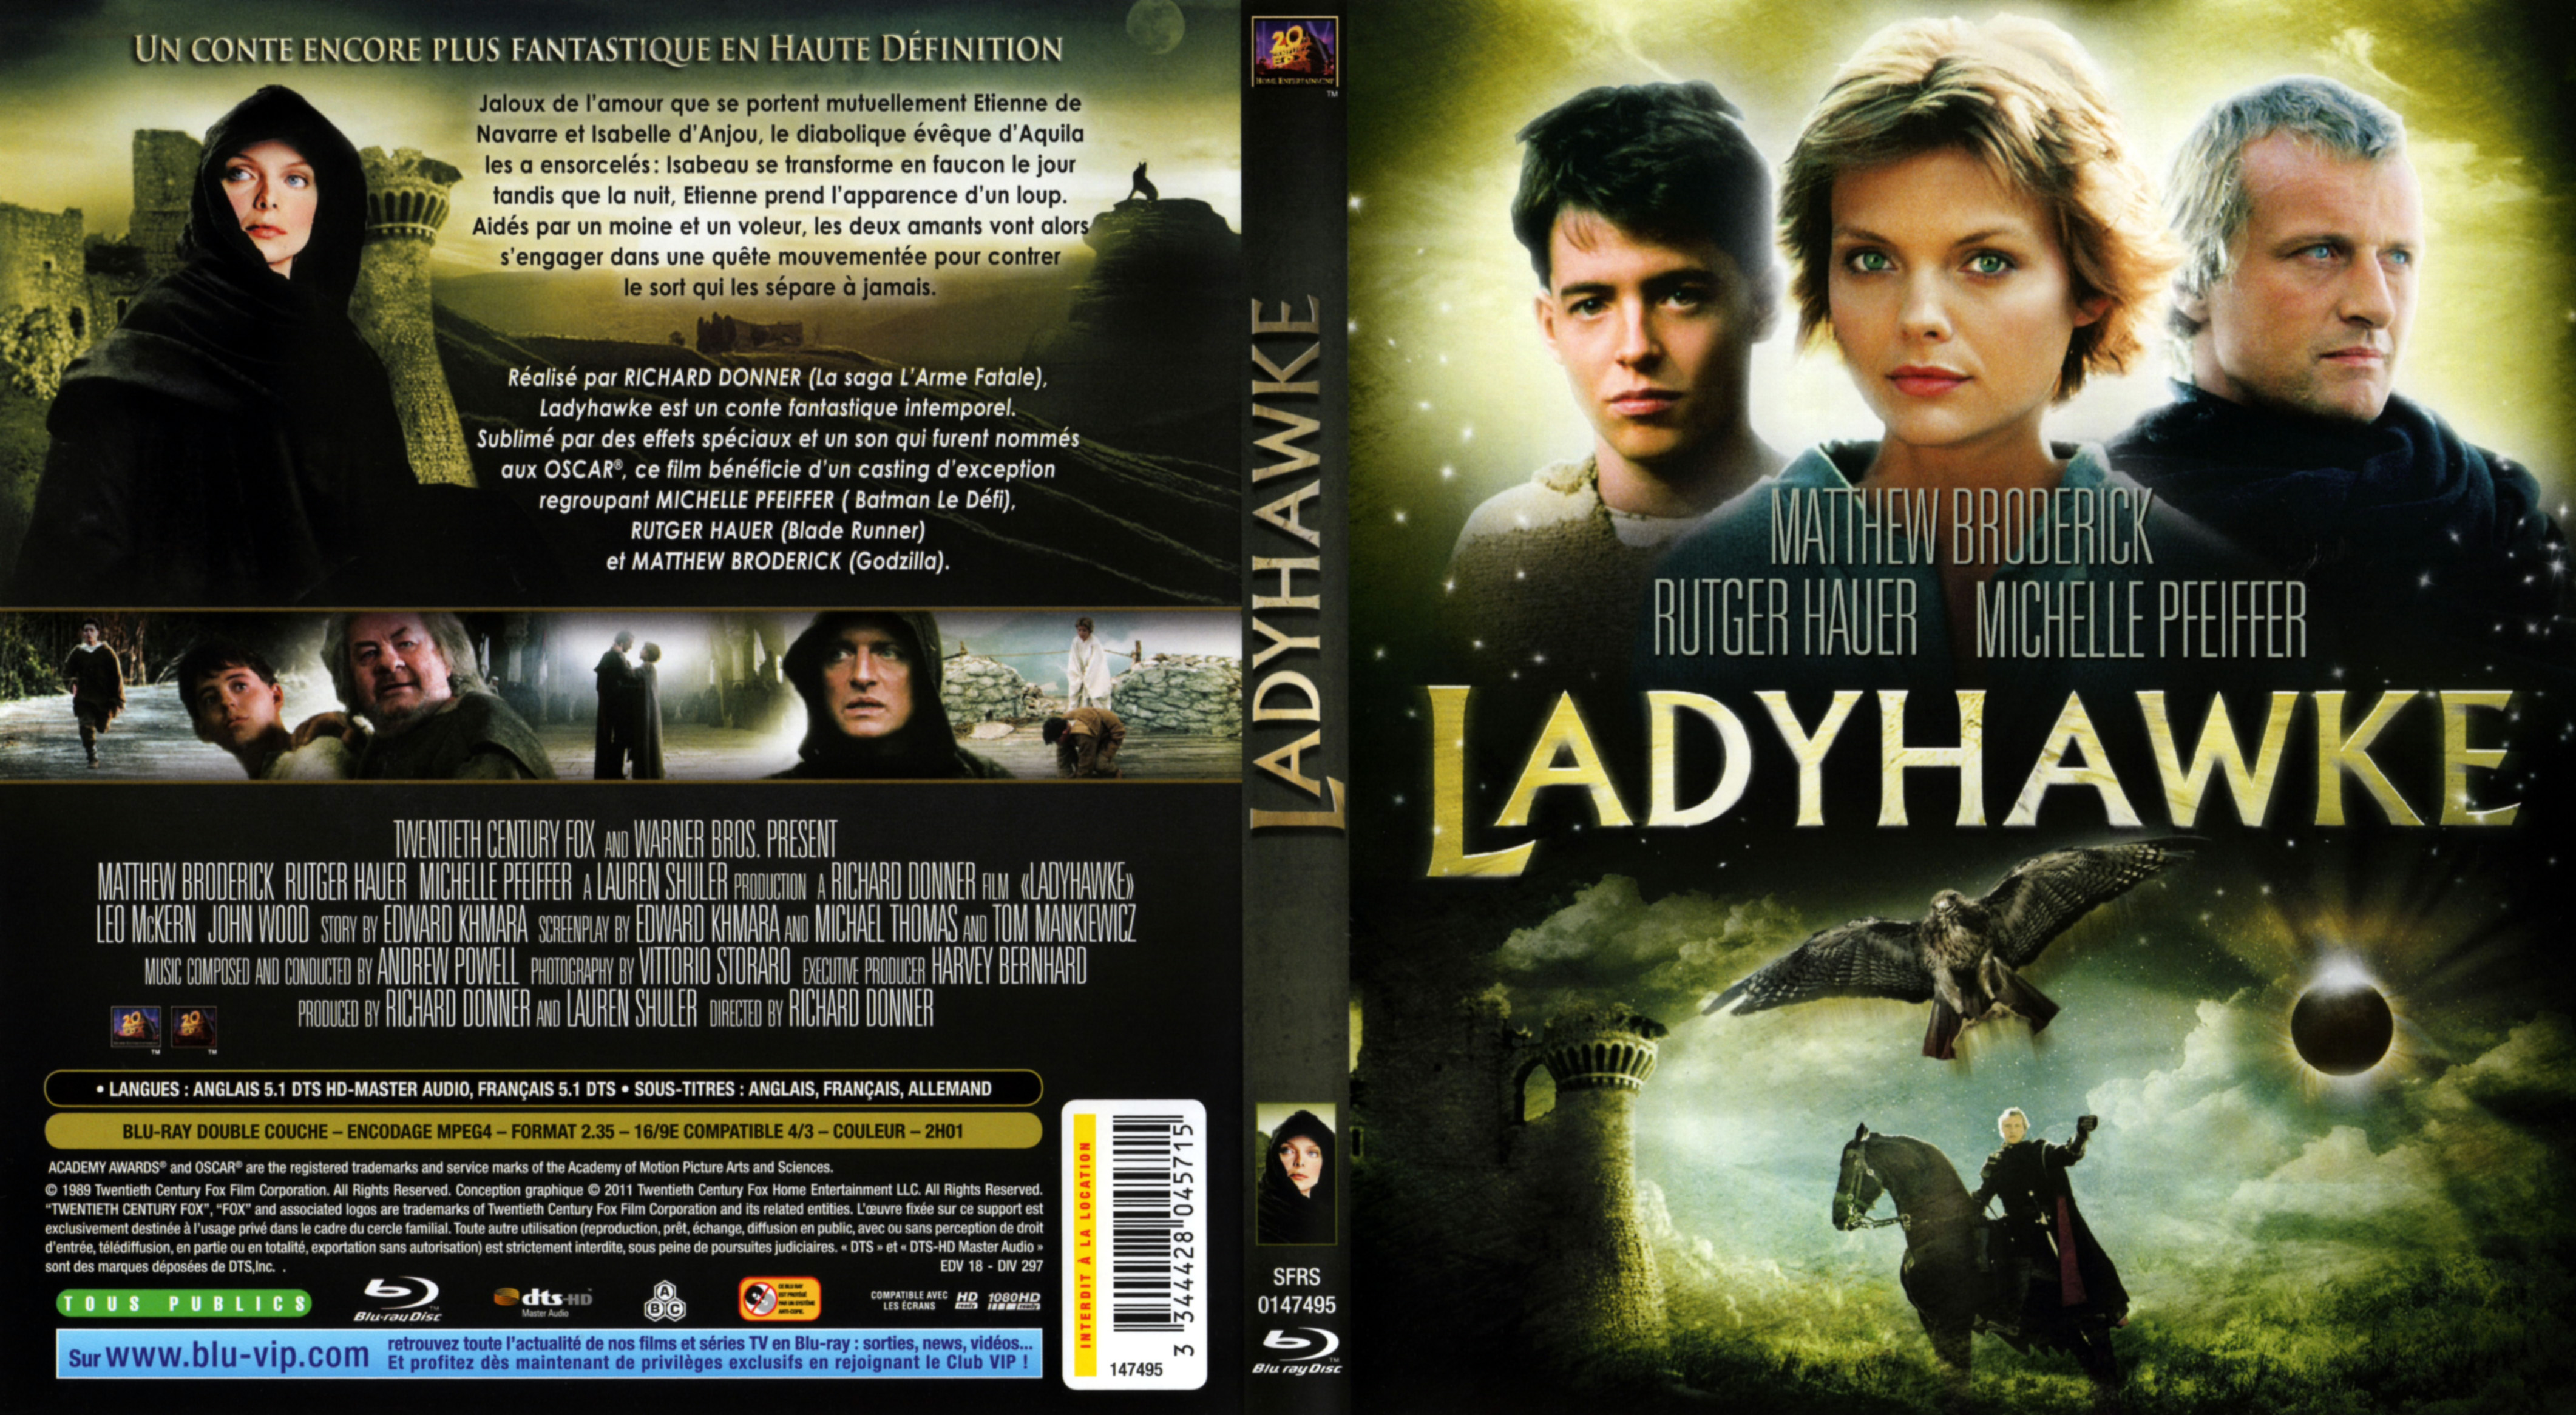 Ladyhawke cast